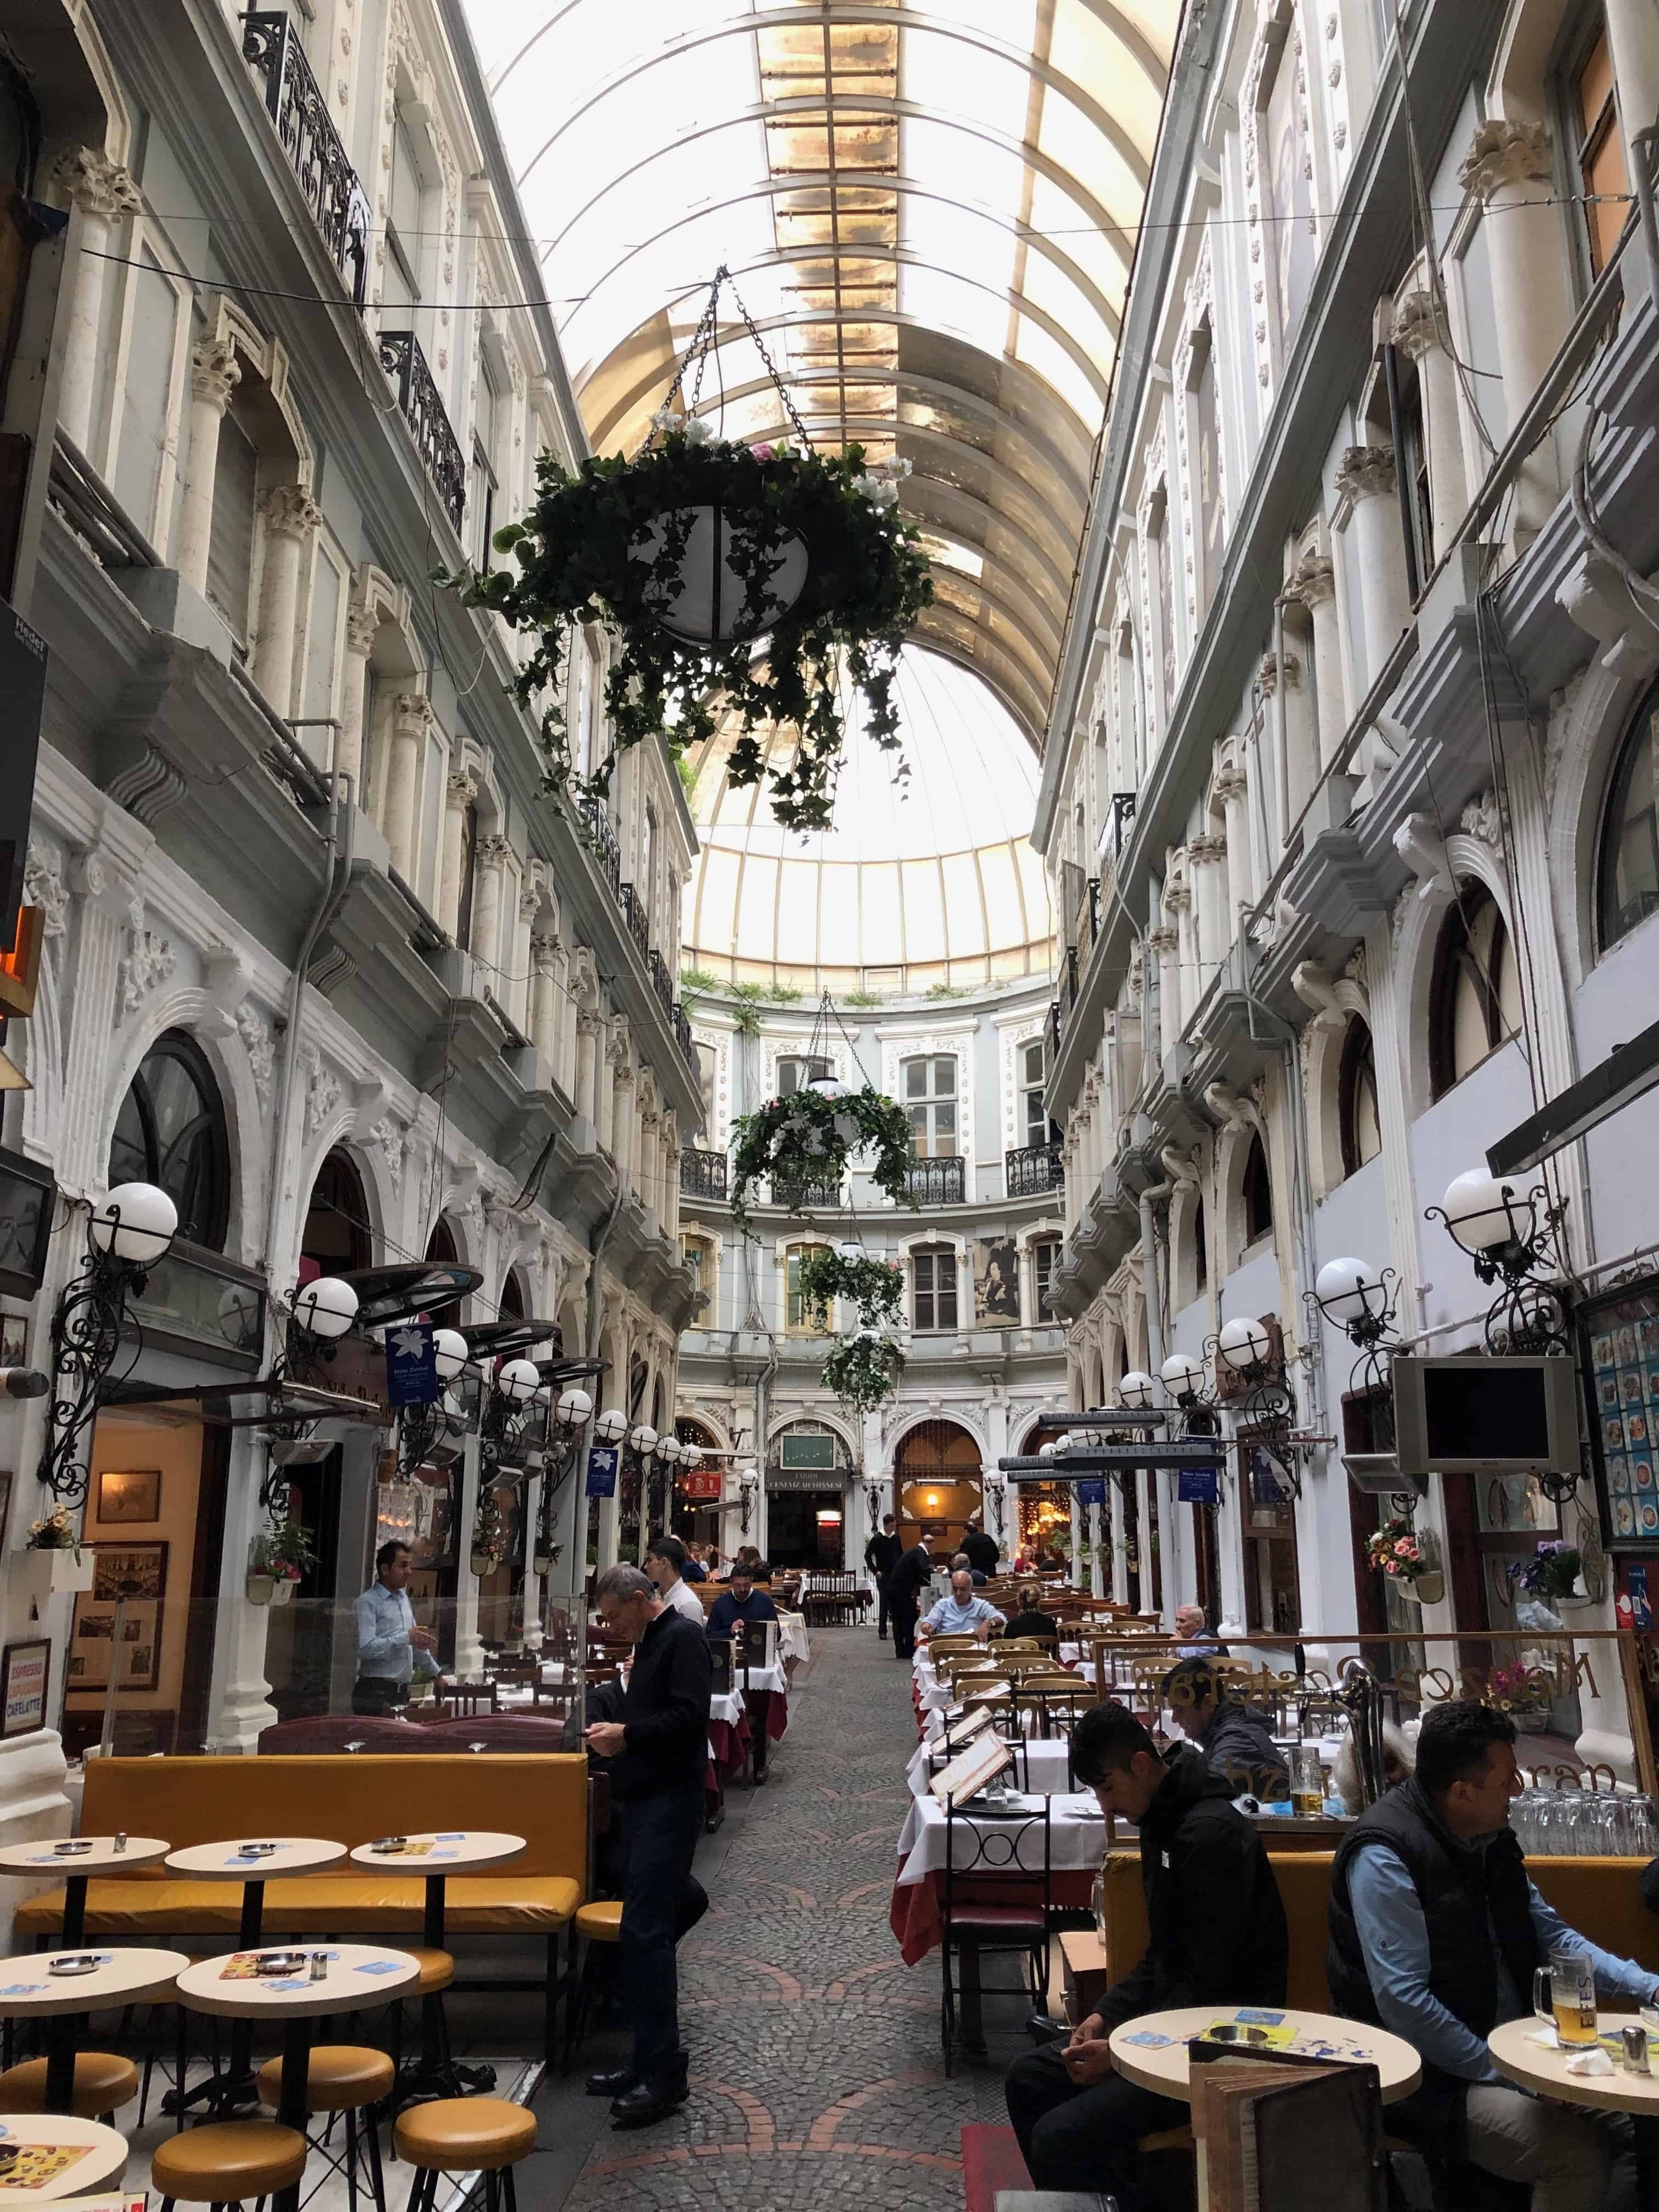 Arcade of Flower Passage in Istanbul, Turkey